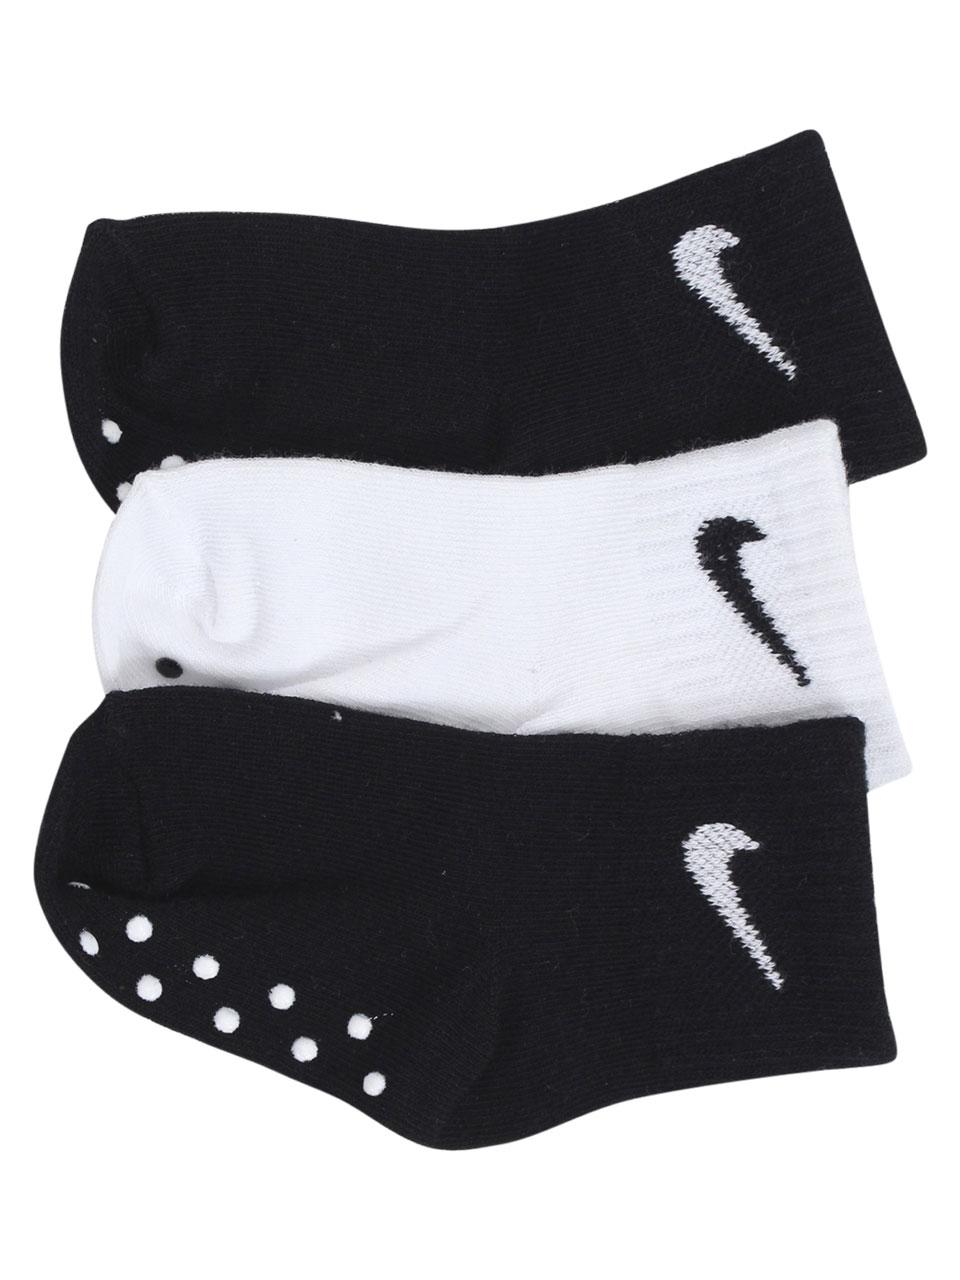 infant nike socks white